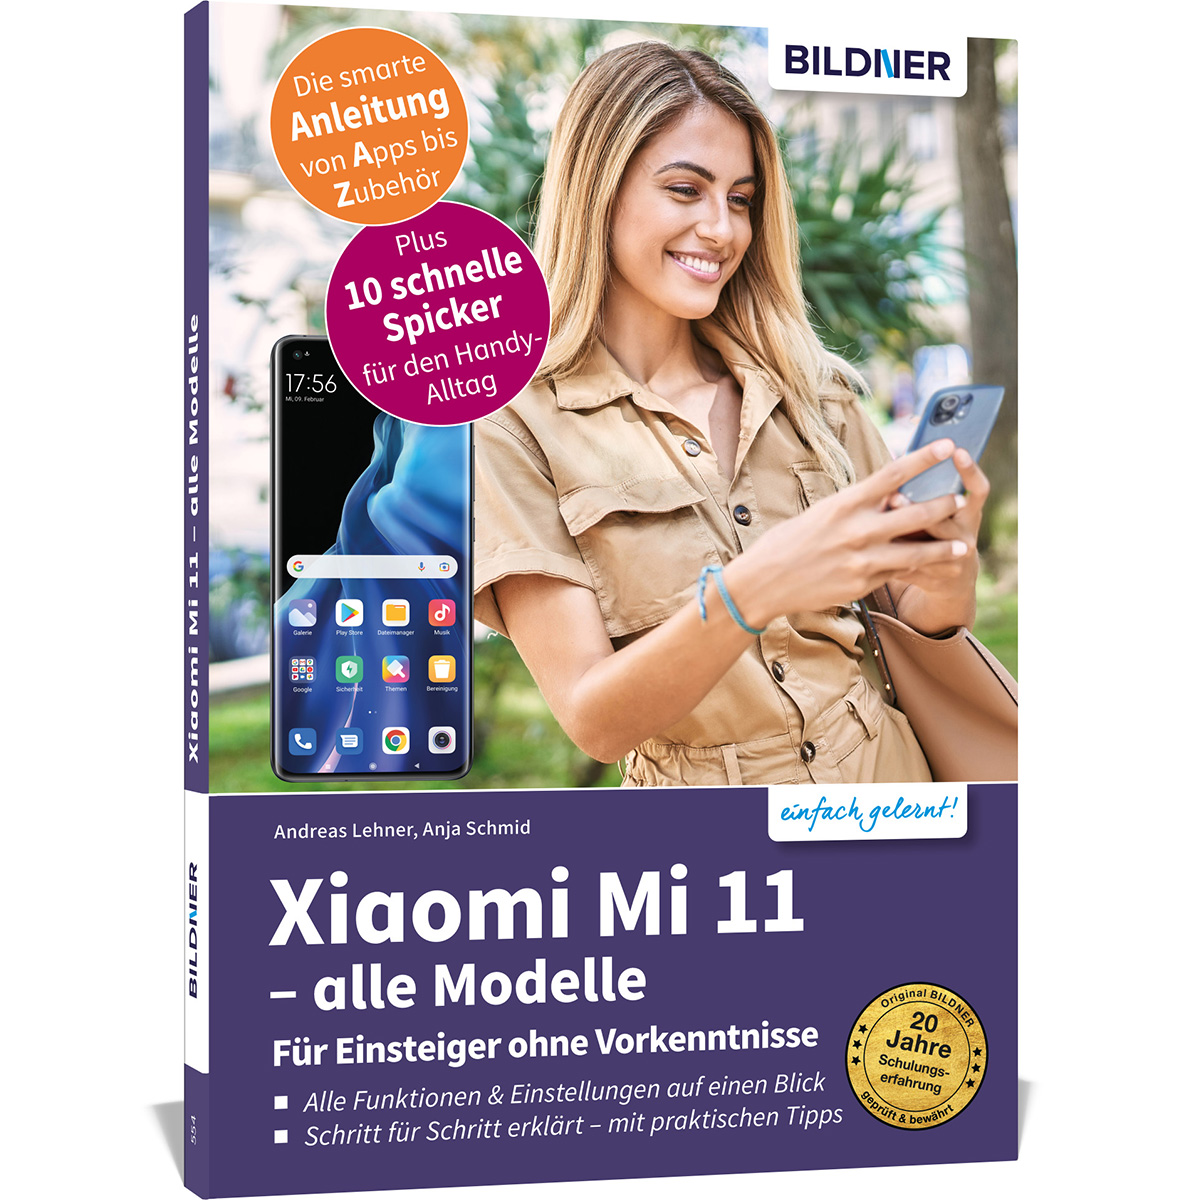 Xiaomi Mi Vorkenntnisse Einsteiger Für - Alle Modelle  - 11 ohne